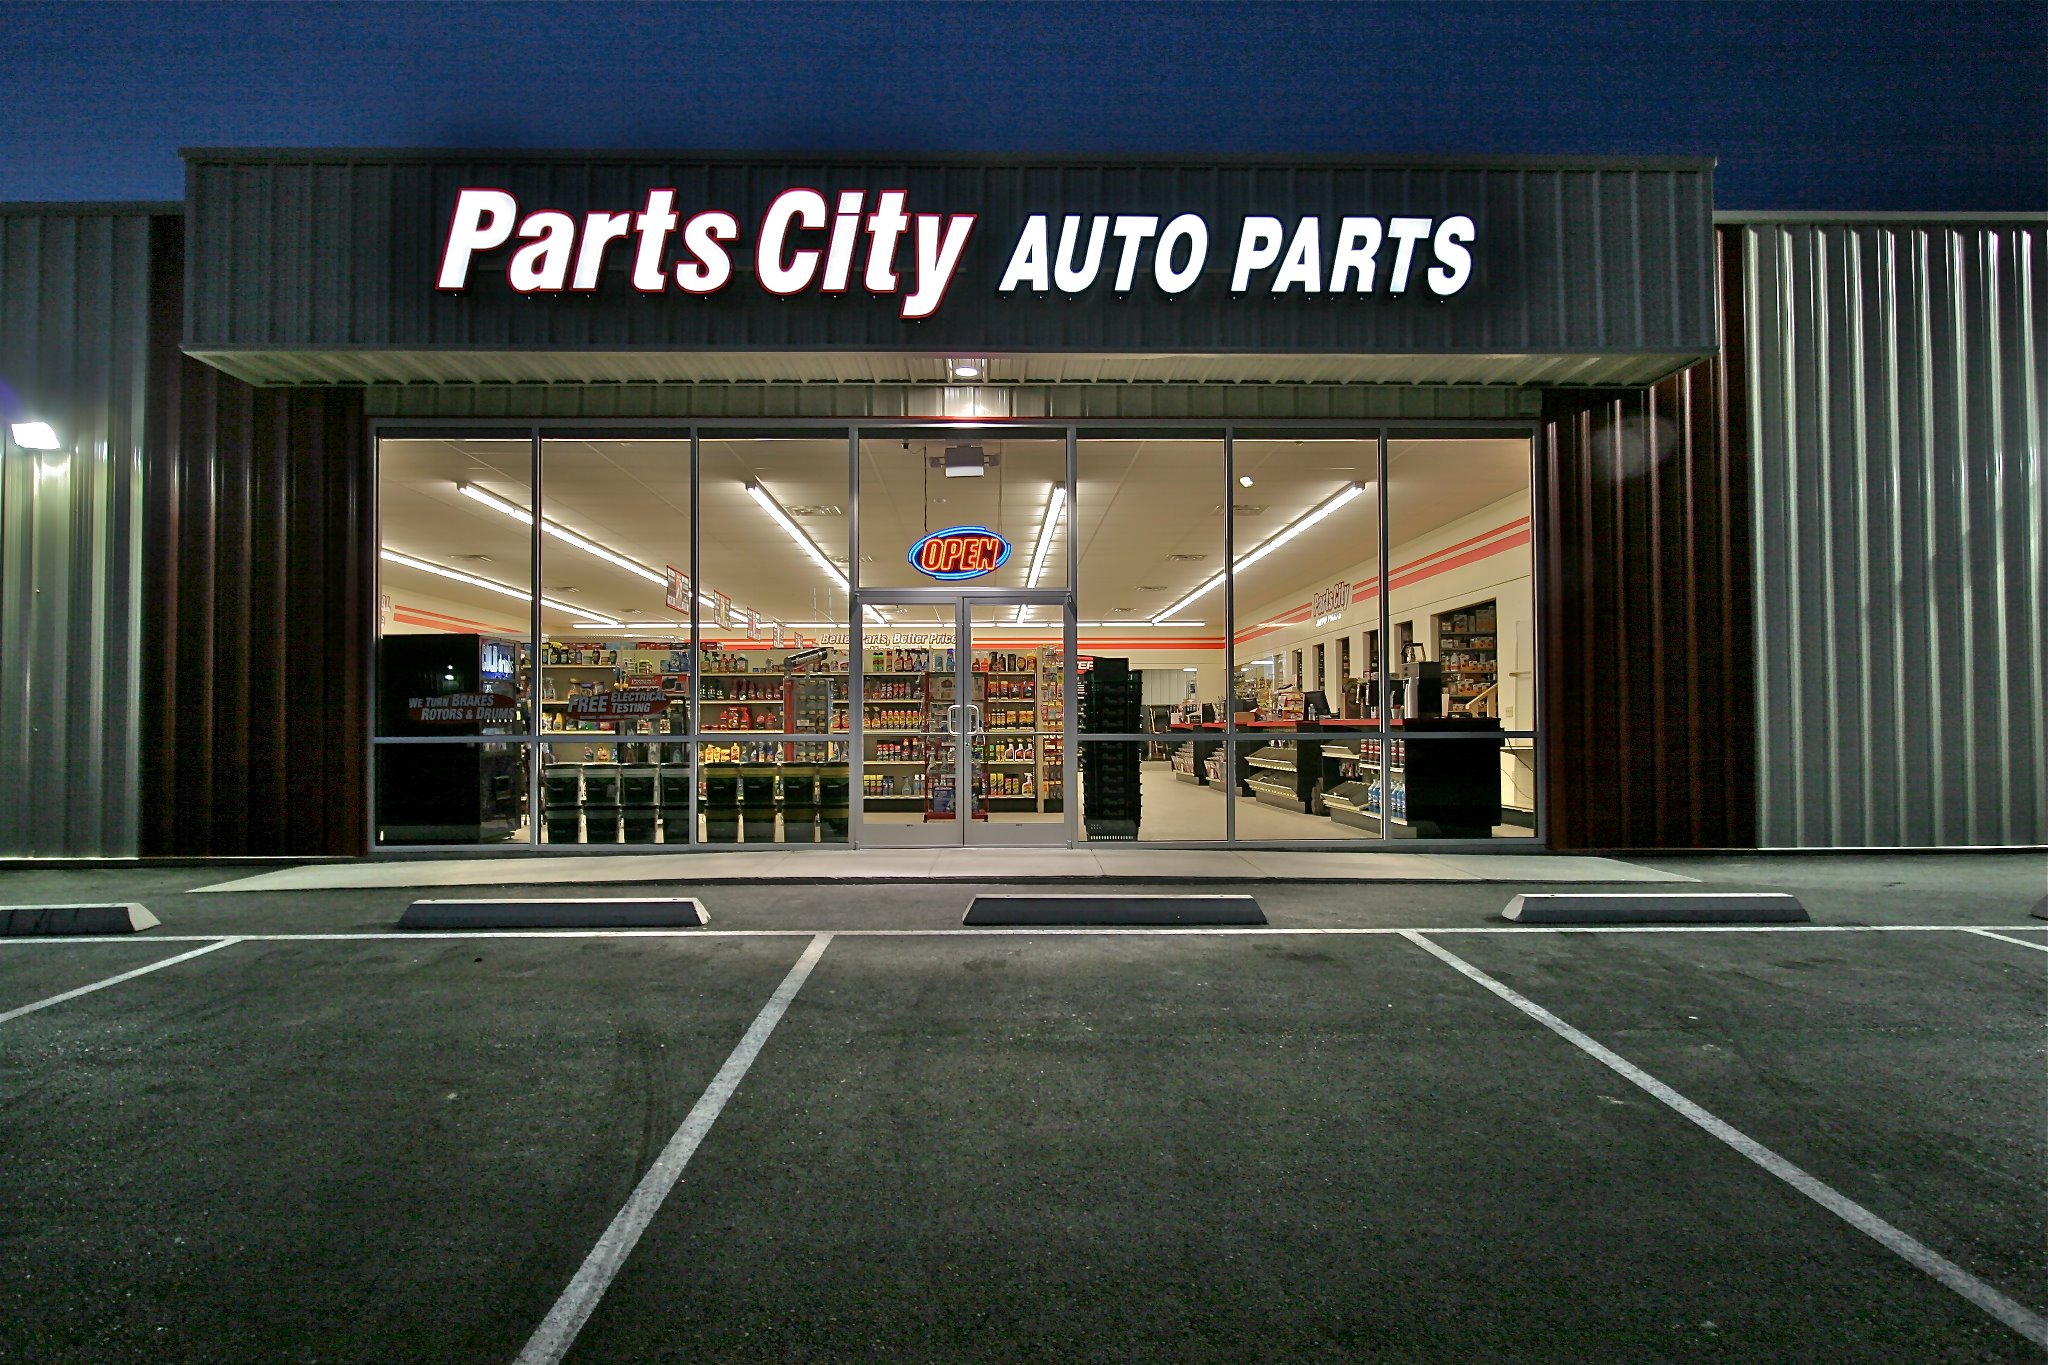 Parts City Auto Parts - West Alabama AG Co & Auto Parts